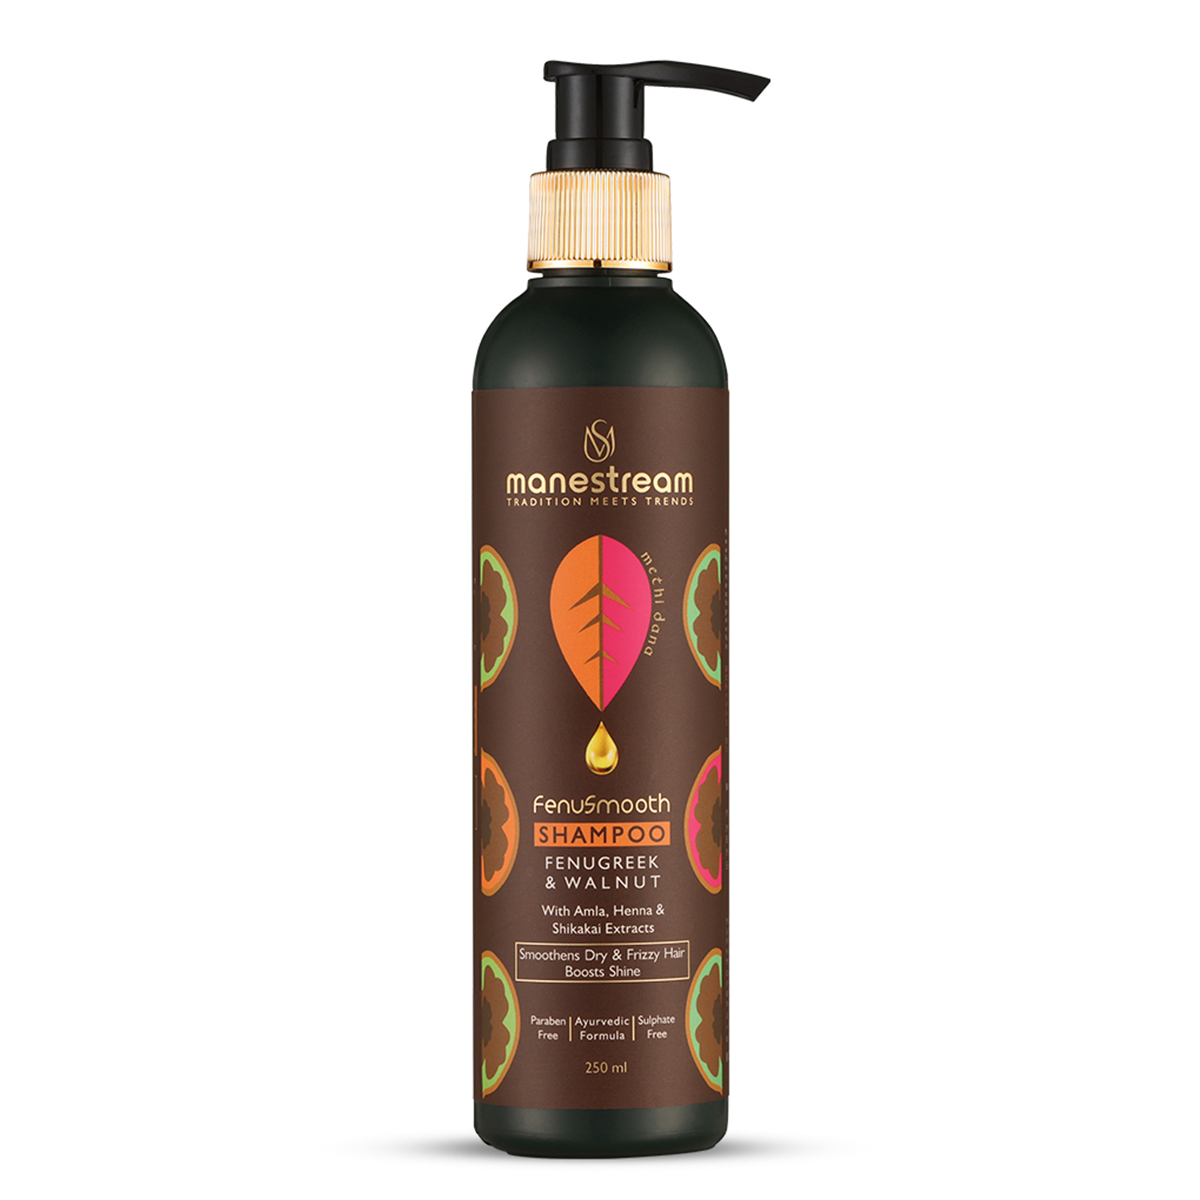 Manestream Fenusmooth Ayurvedic Fenugreek and Walnut Shampoo for Smooth, Frizz-Free Hair, Controls Dryness, 250ml